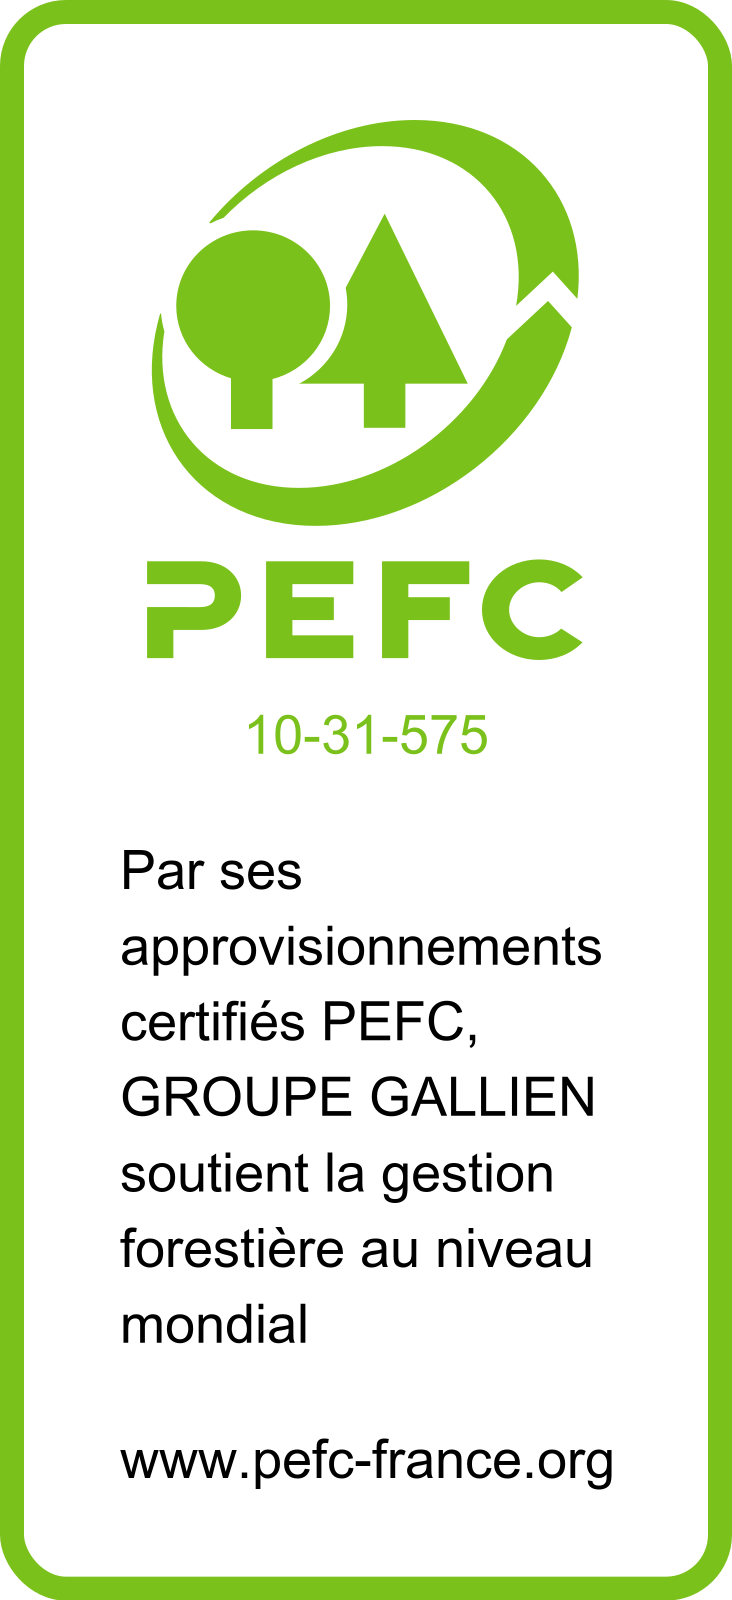 pefc label pefc10 31 575 logo pefc groupe gallien Poteaux EDF